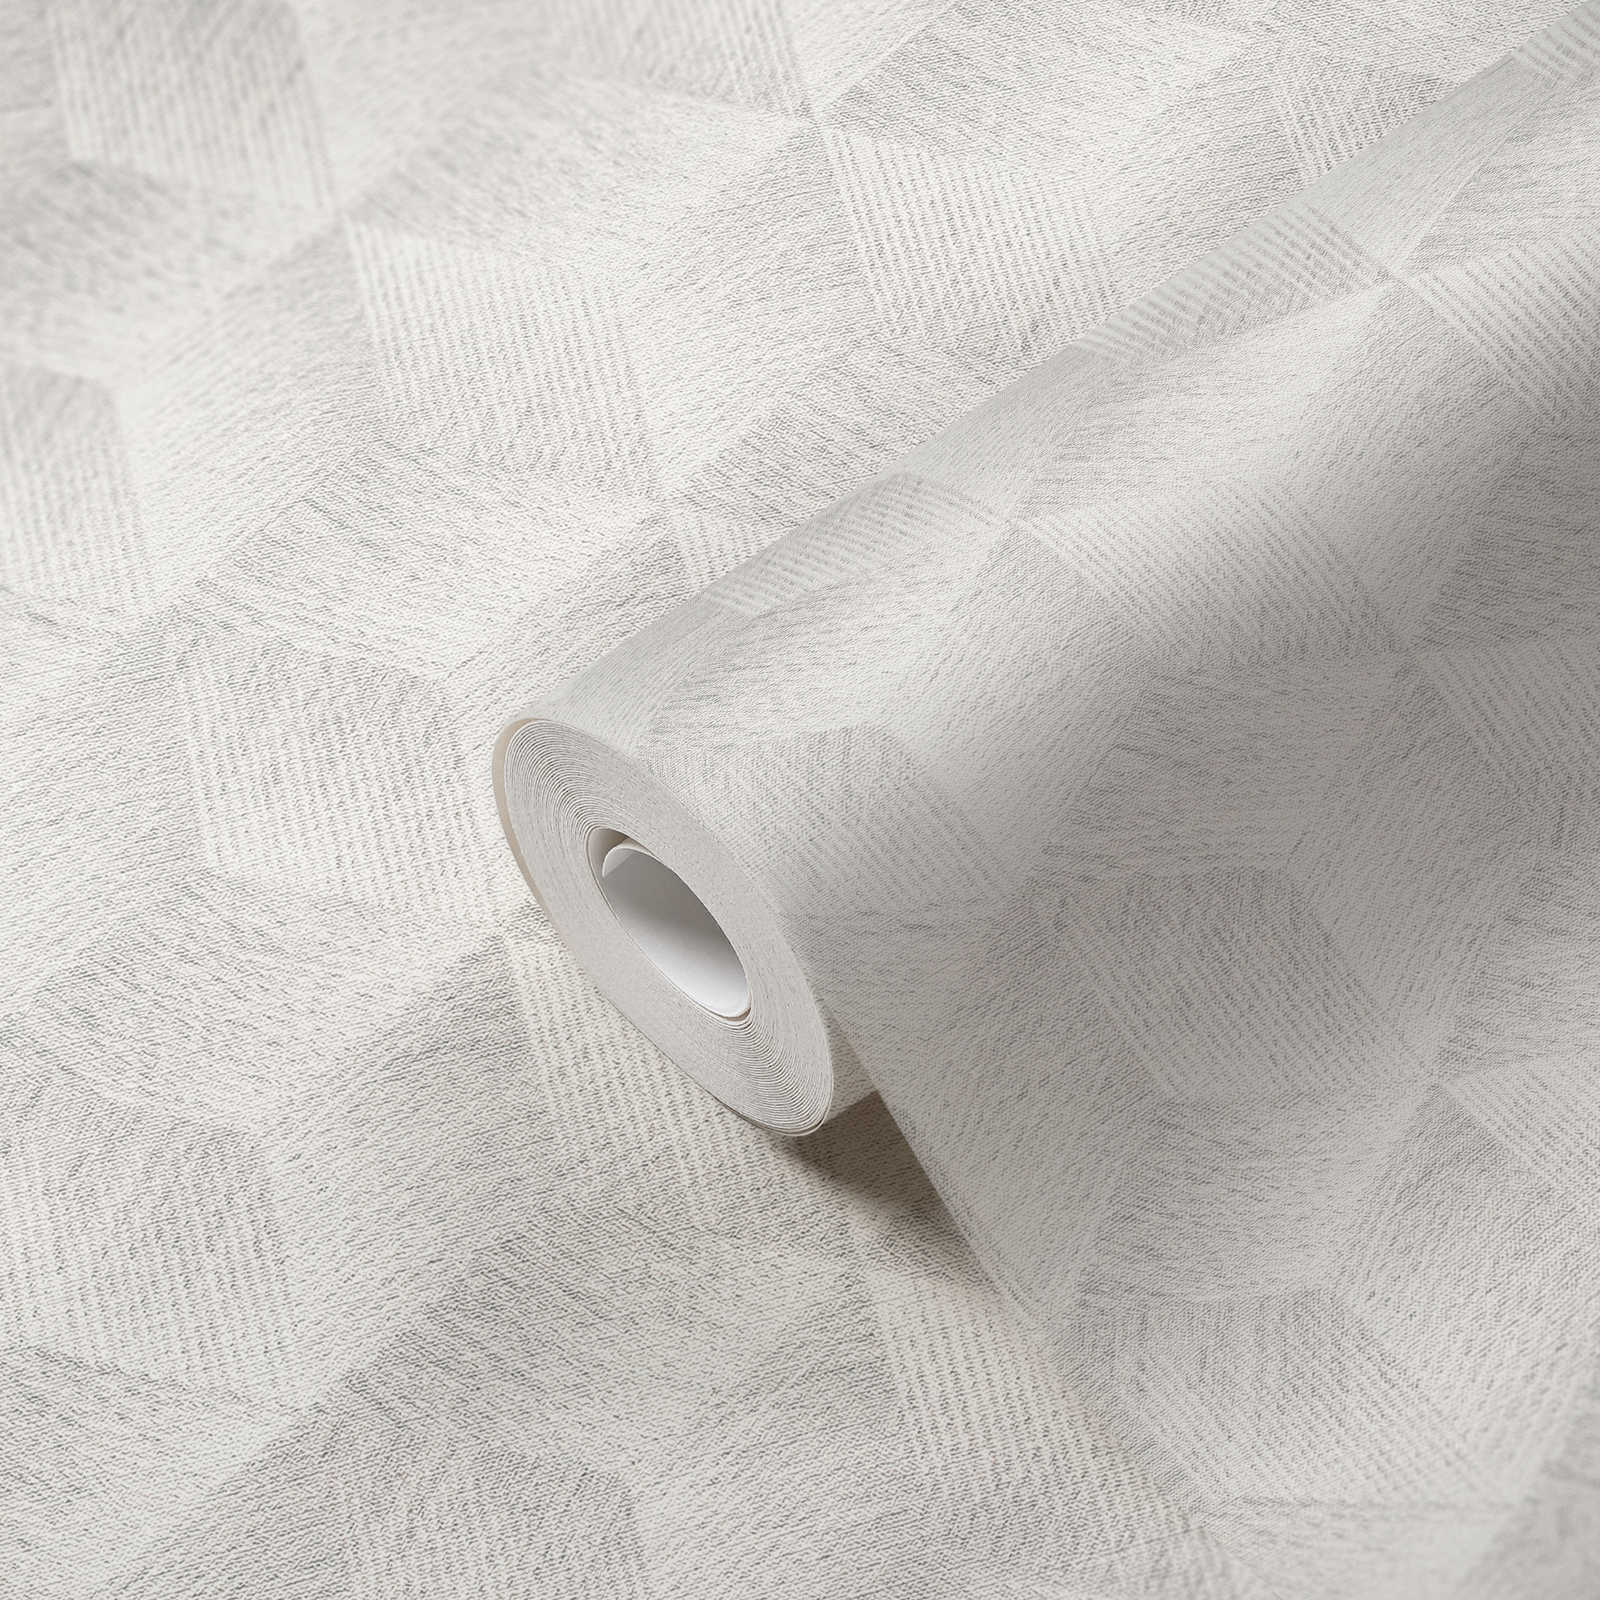             Papier peint optique 3D sans PVC à motif carré & effet brillant - gris, blanc
        